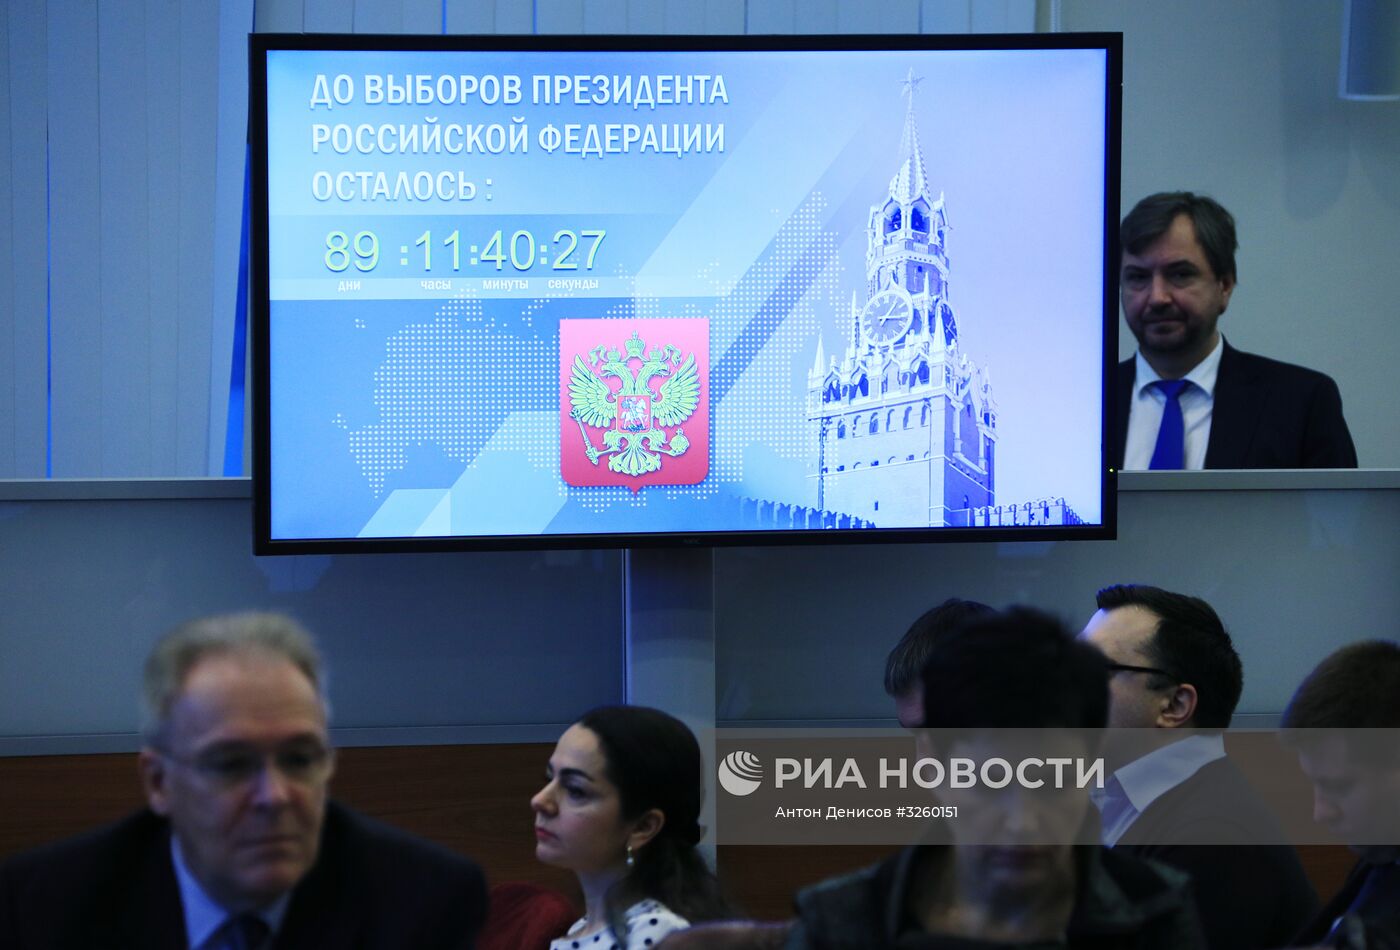 Заседание ЦИК РФ, посвященное старту избирательной кампании по выборам президента РФ